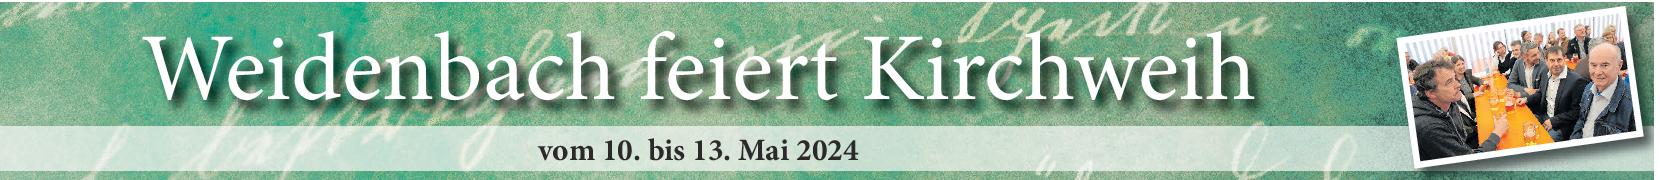 Kirchweih in Weidenbach vom 10. bis 13. Mai: Vielfältiges Programm lockt die ganze Familie ins schöne Weidenbach